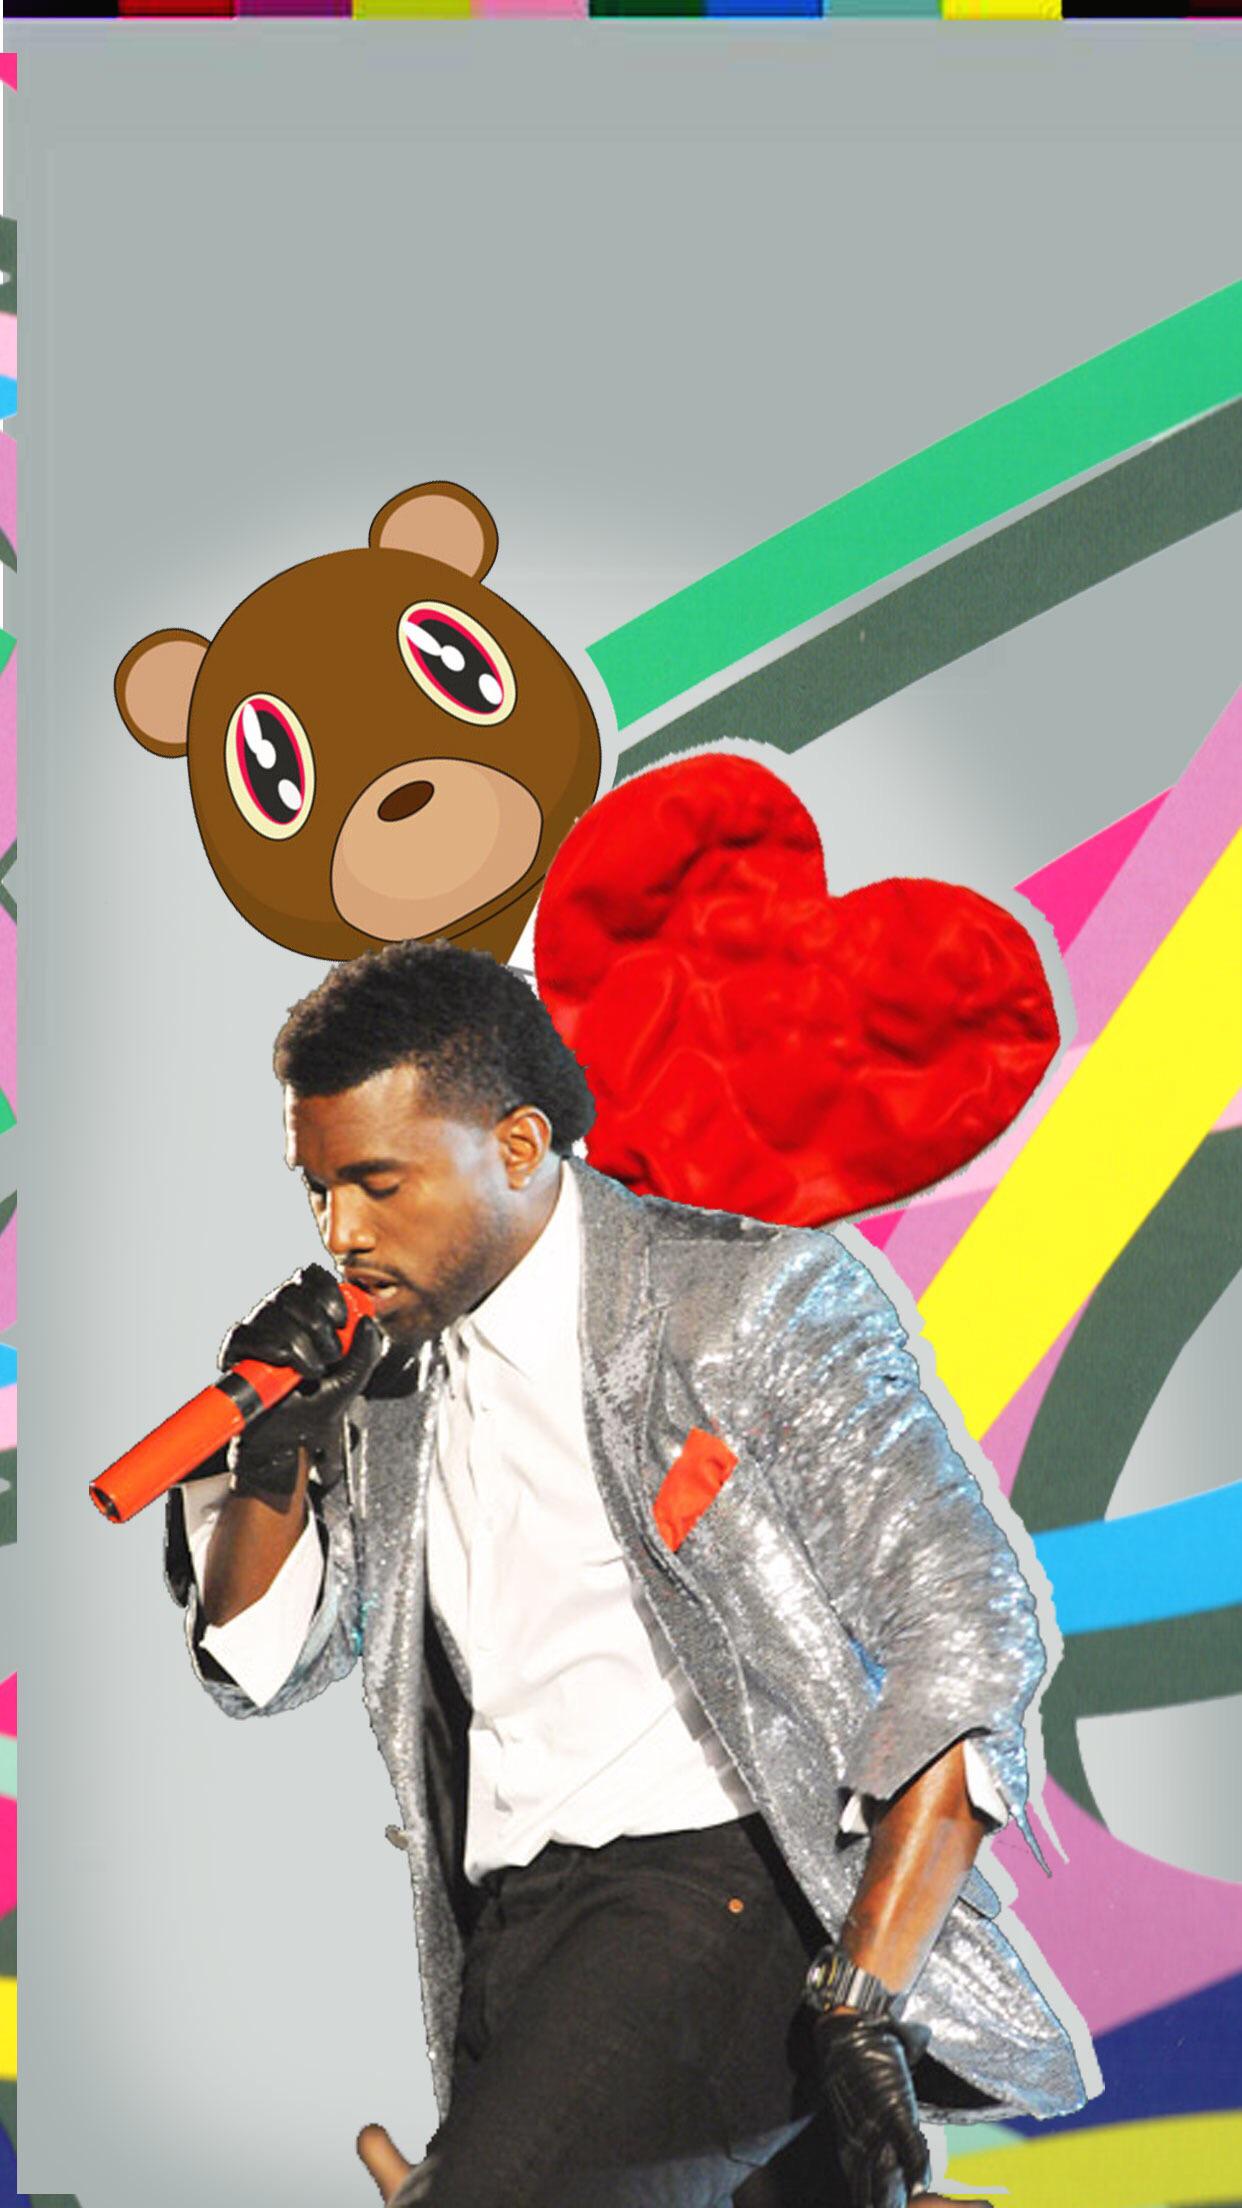 My 808 & Heartbreak IPhone wallpaper I made.: Kanye